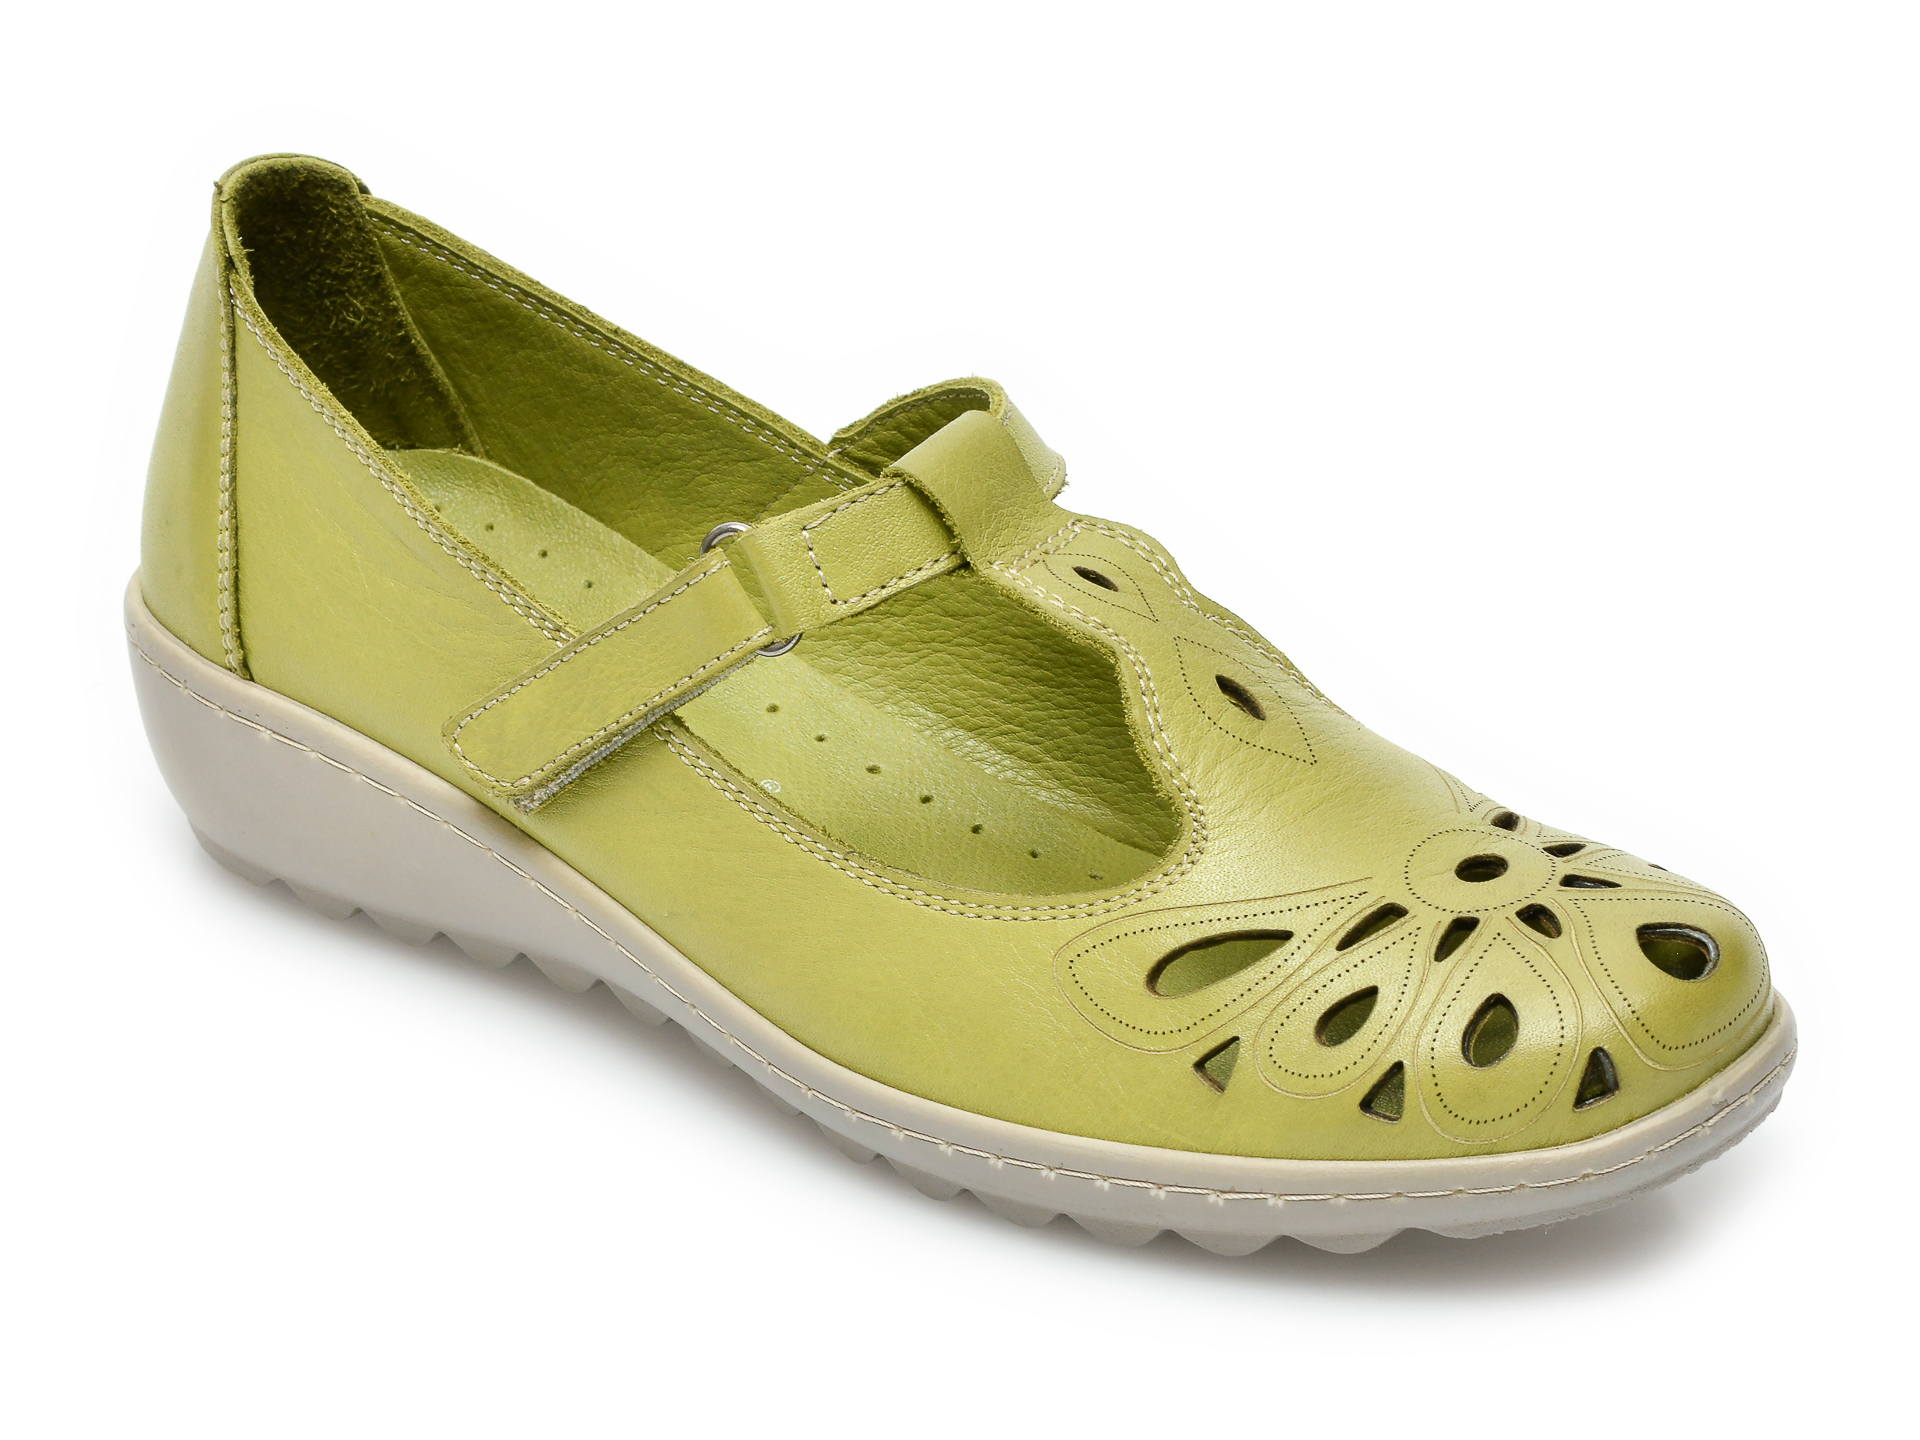 Pantofi PASS COLLECTION verzi, 27615, din piele naturala